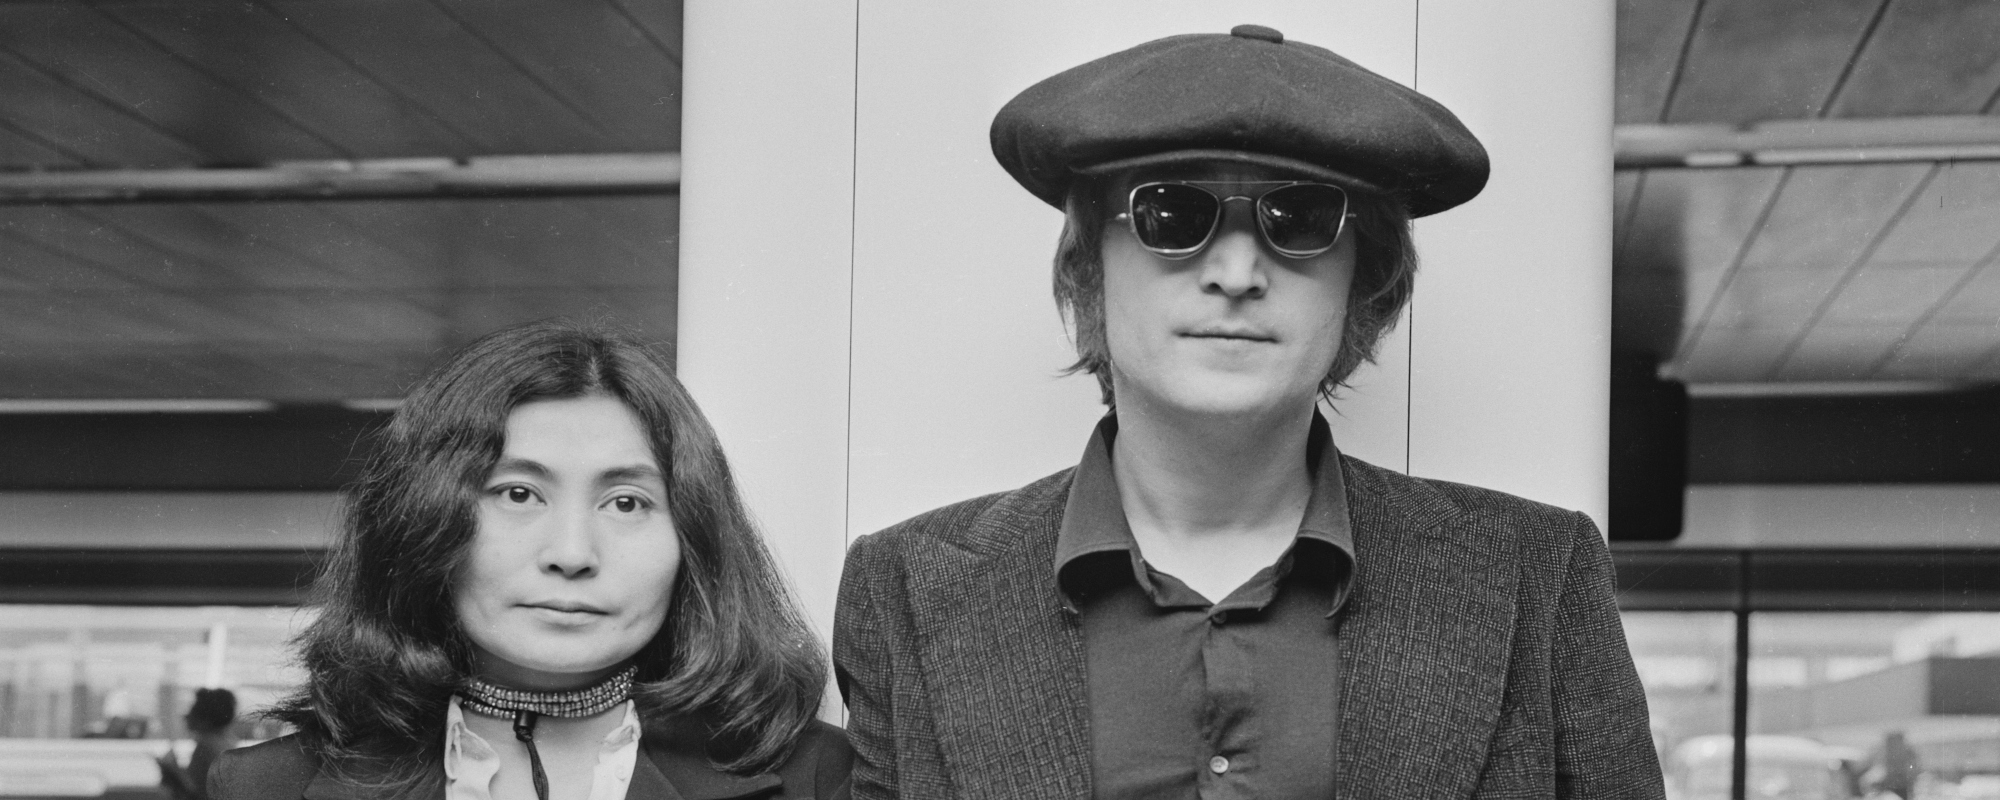 Behind the Hopeful and Iconic “Imagine” by John Lennon